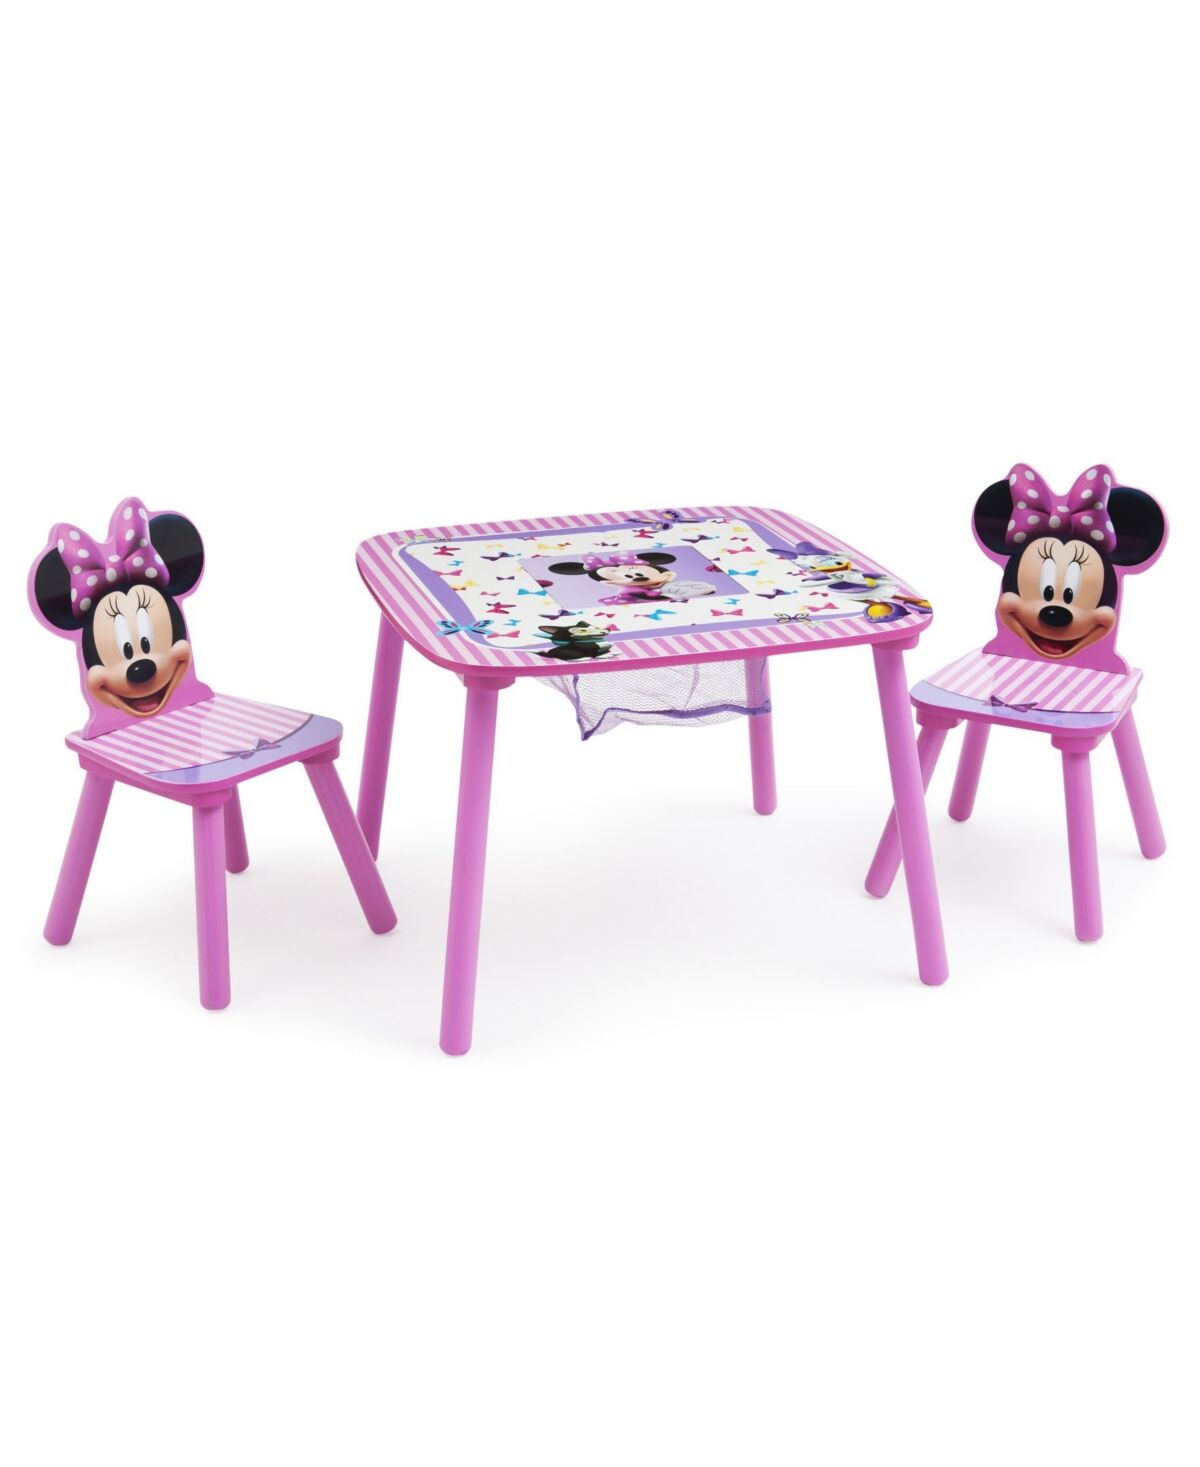 Delta Children Disney Minnie Mouse Delta Children Kids Storage Table and Chair Set, 3 Piece - Pink